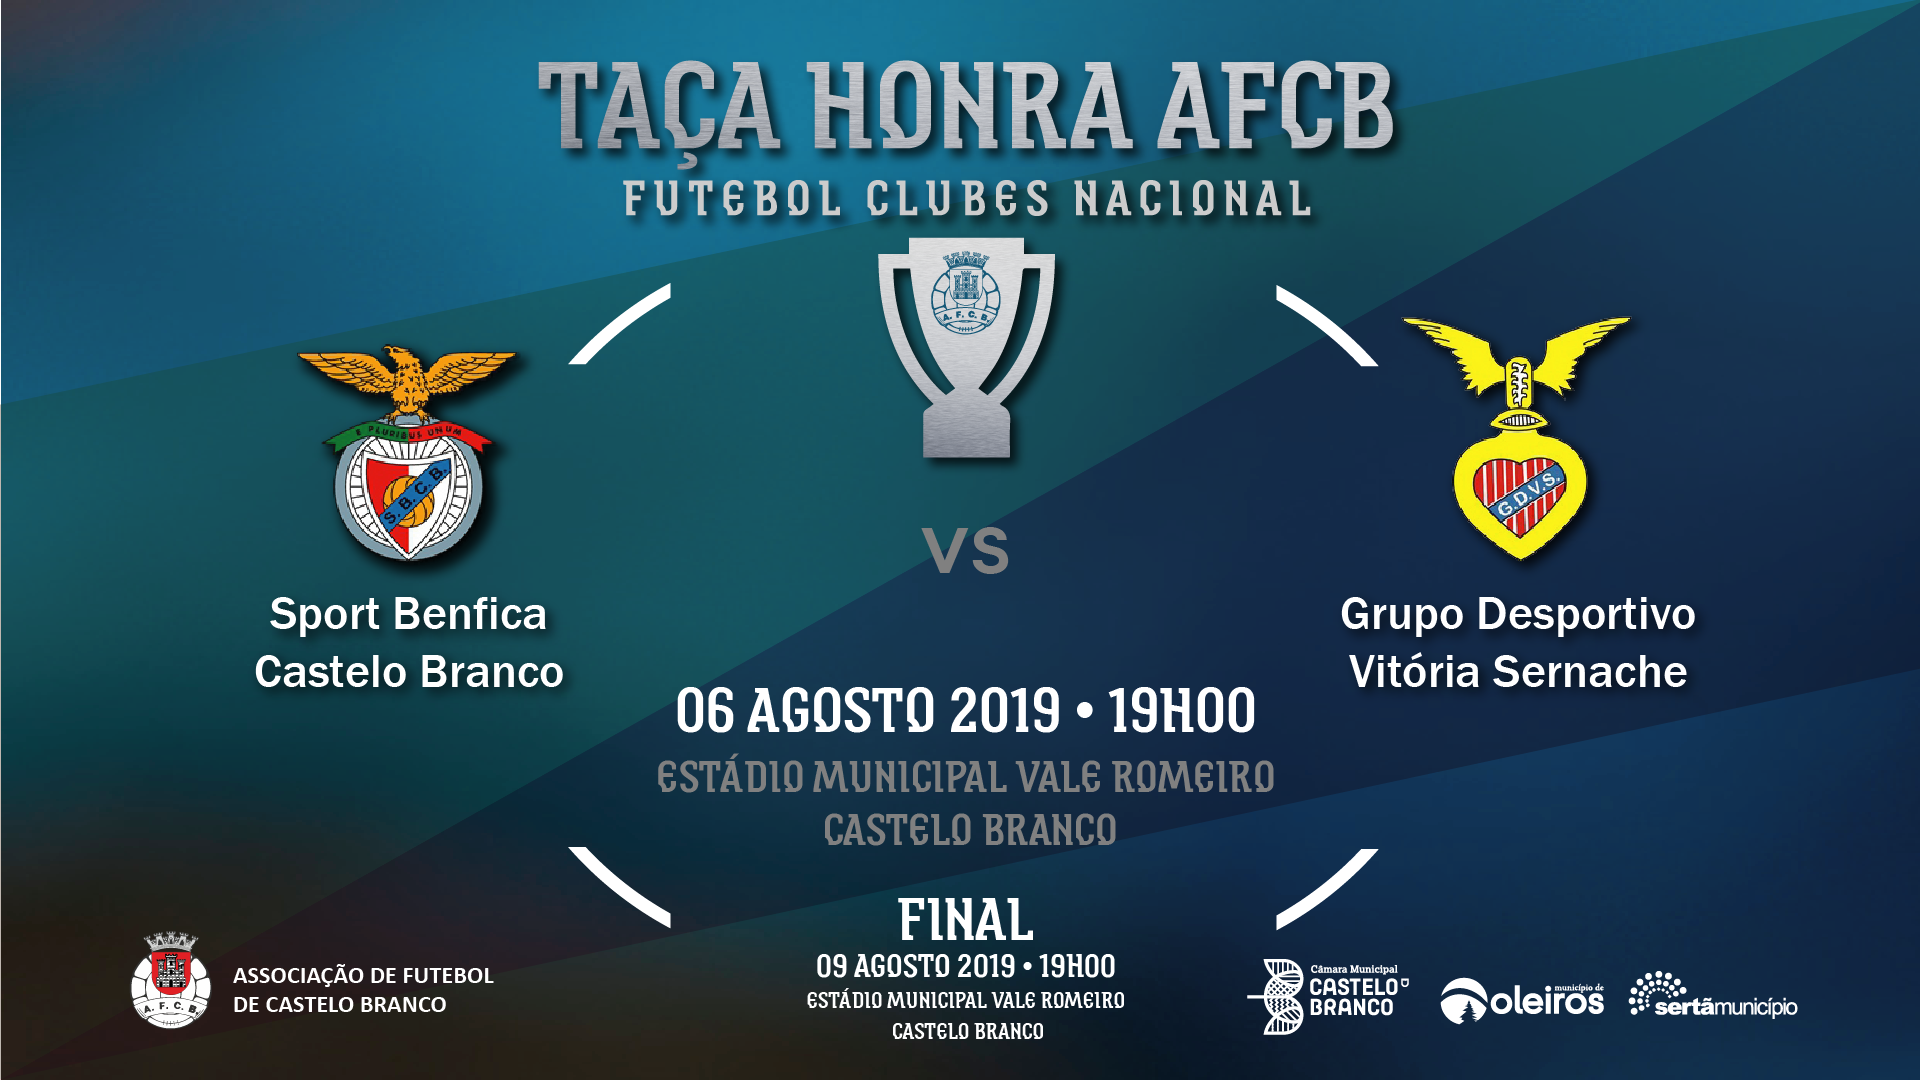 GD Vitória de Sernache bate S. Benfica e Castelo Branco e está na final da Taça de Honra